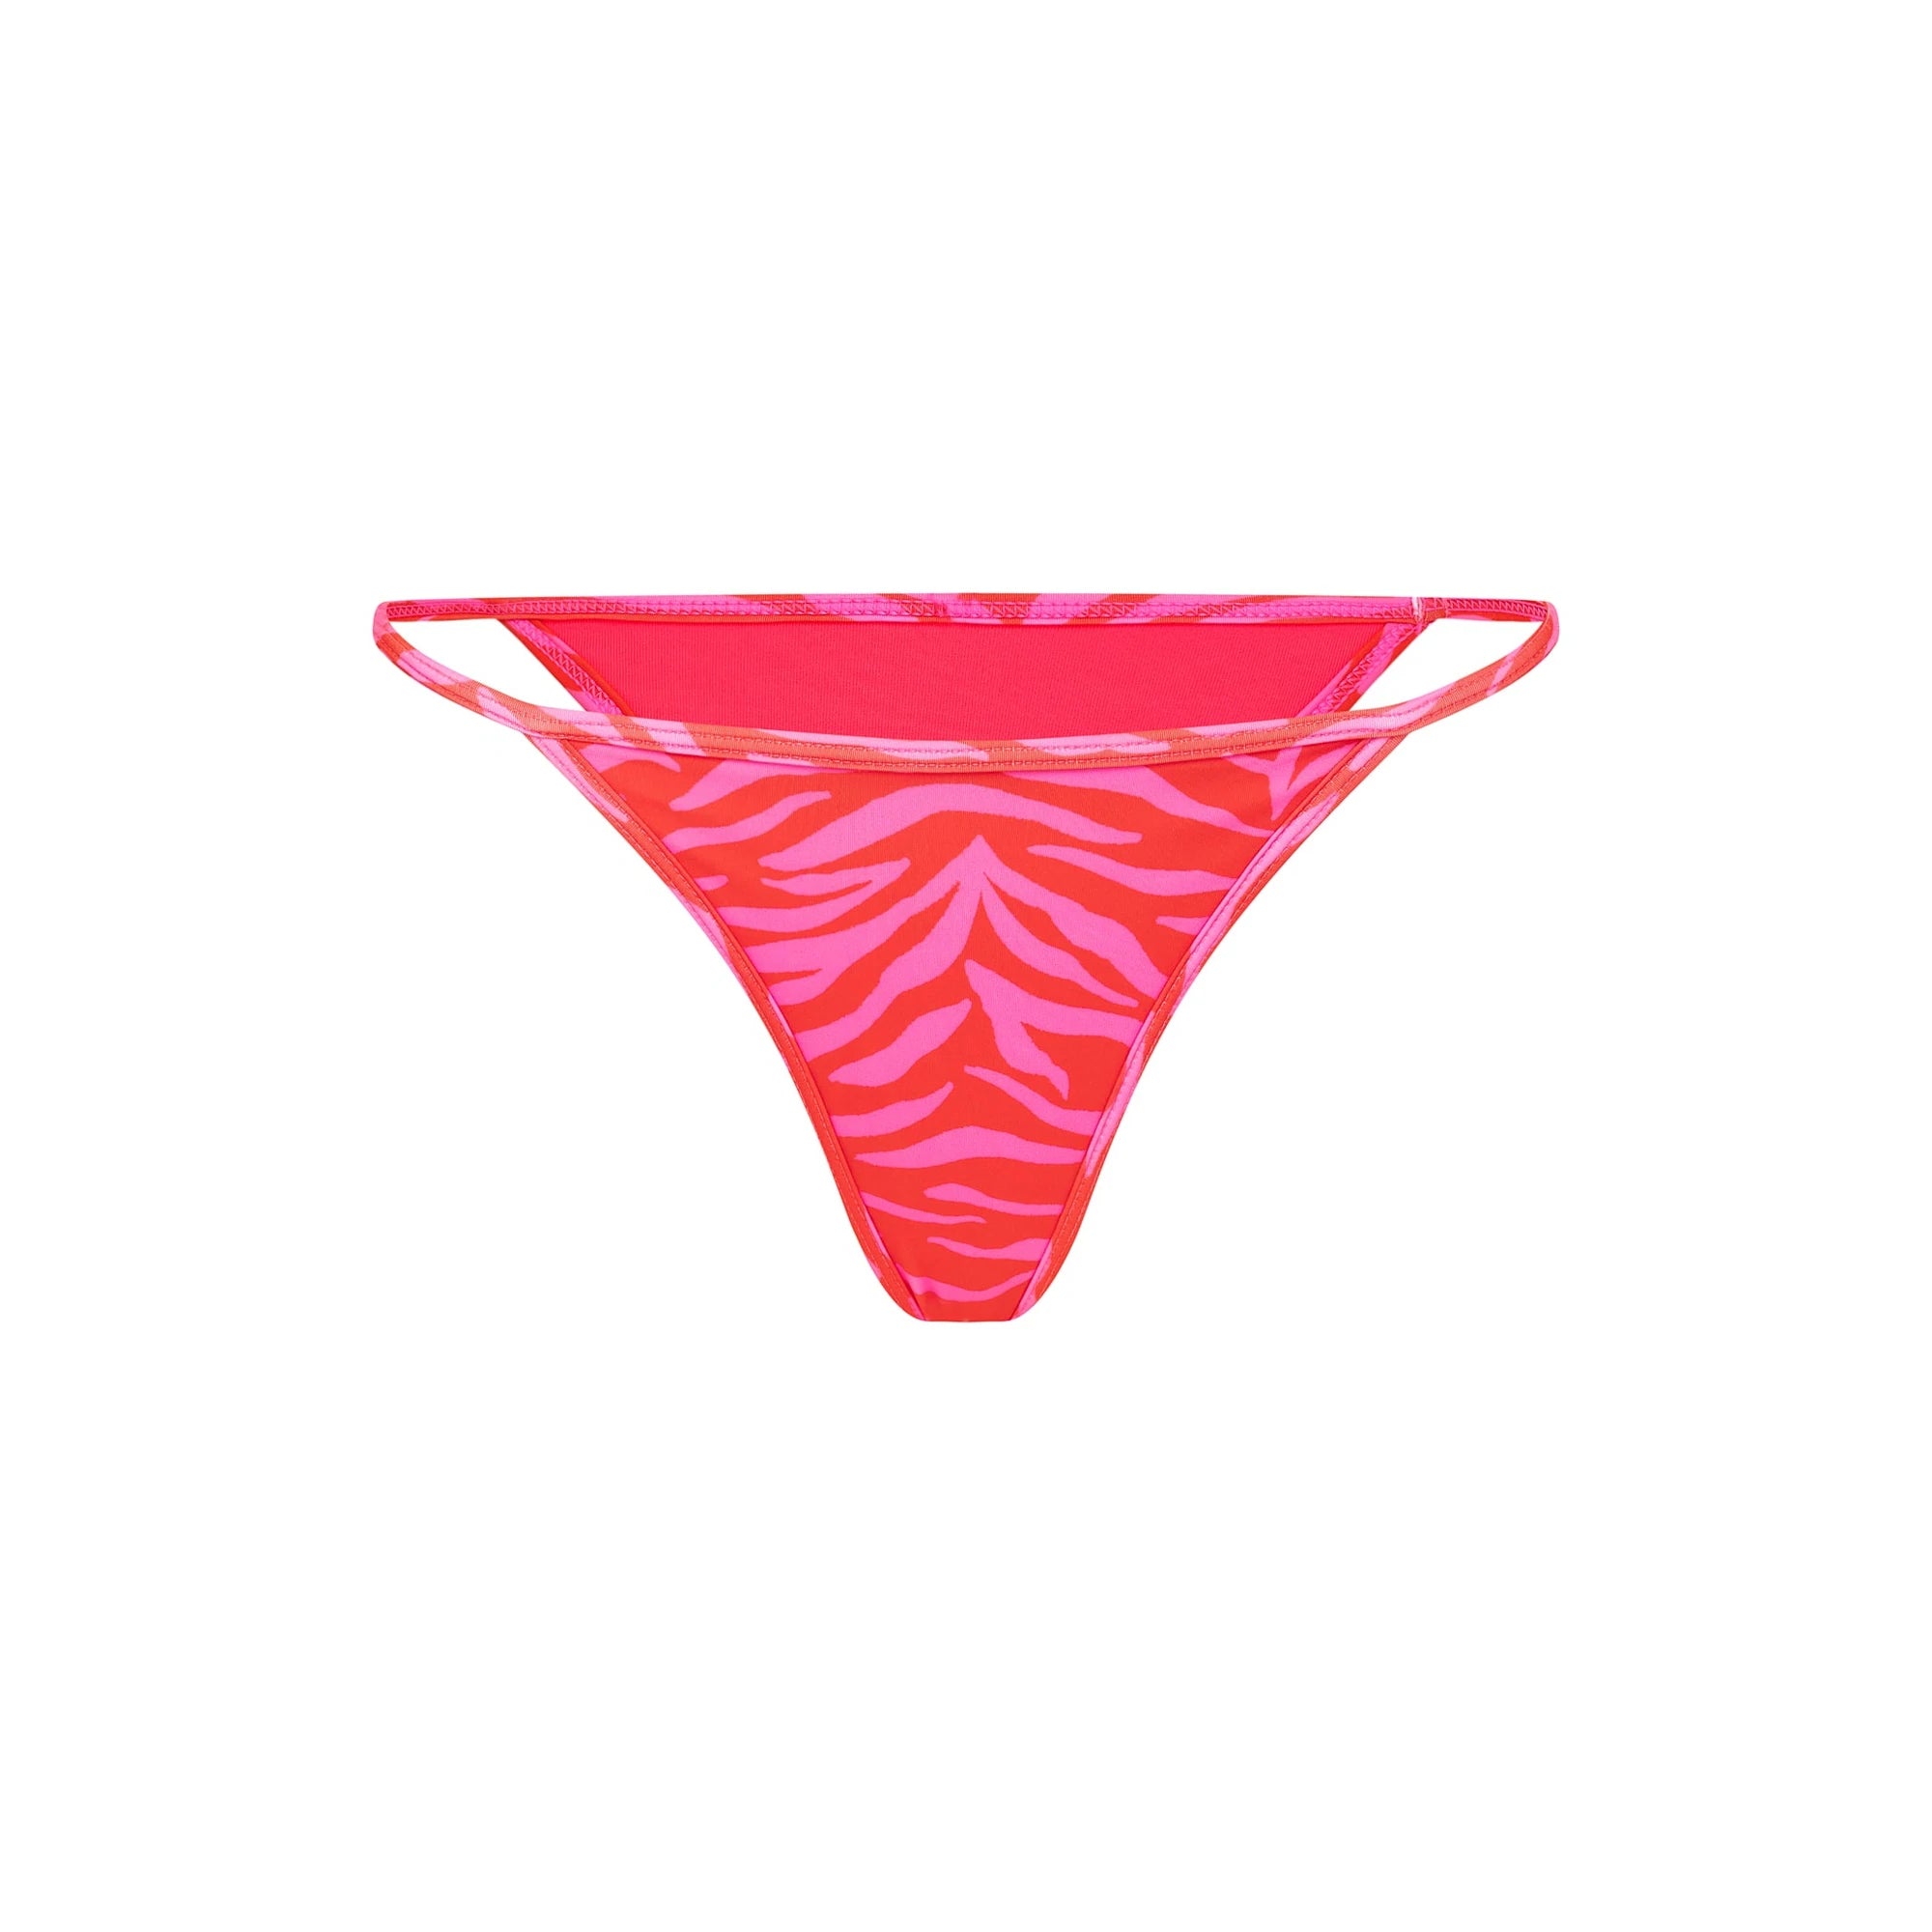 A Latin Cut bikini bottom in red and pink tiger print